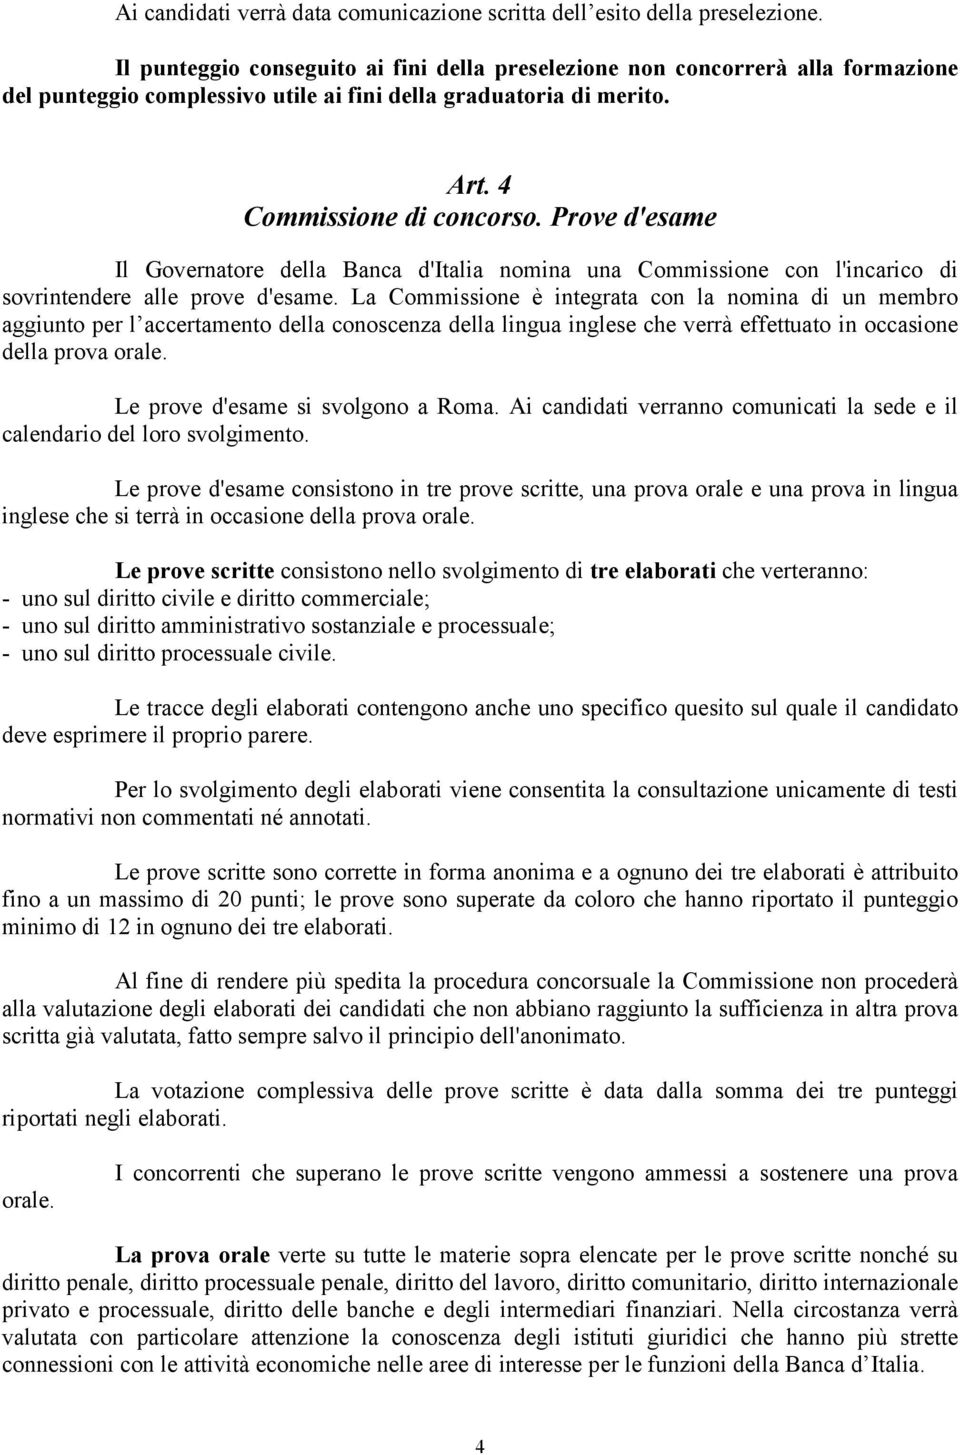 Prove d'esame Il Governatore della Banca d'italia nomina una Commissione con l'incarico di sovrintendere alle prove d'esame.